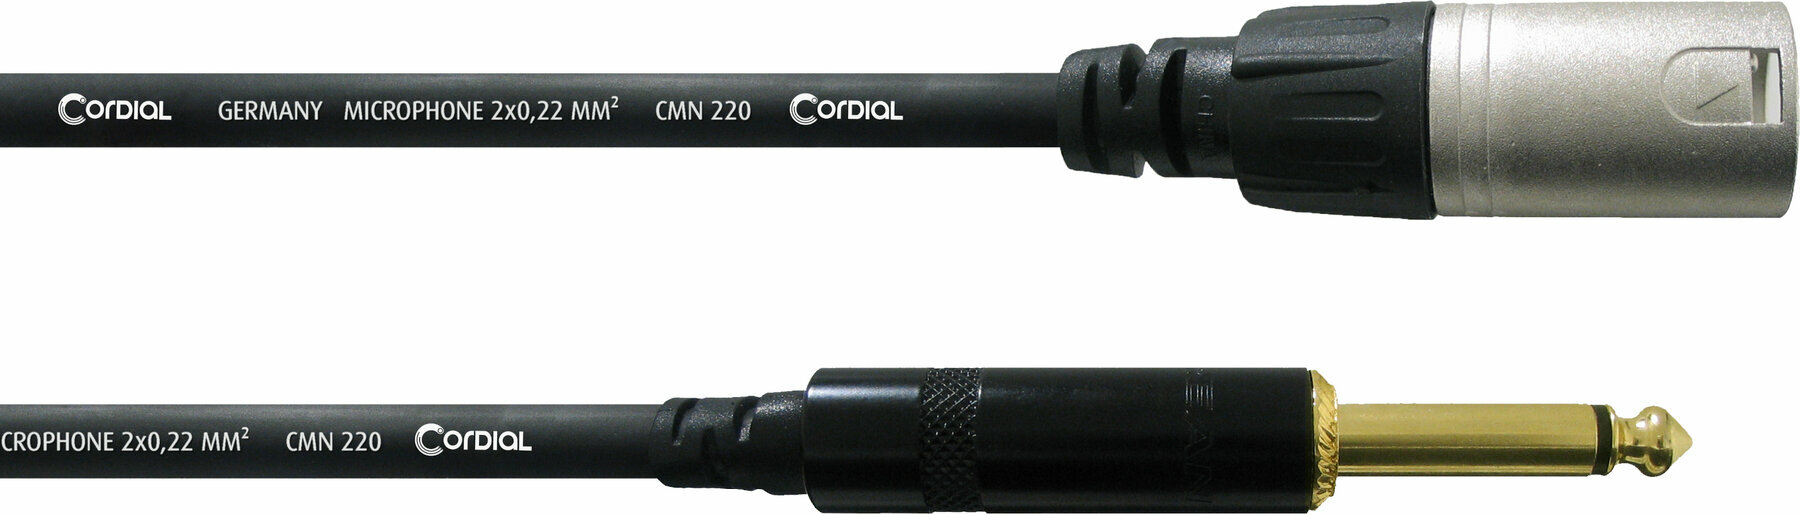 Câble pour microphone Cordial CCM 5 MP Noir 5 m